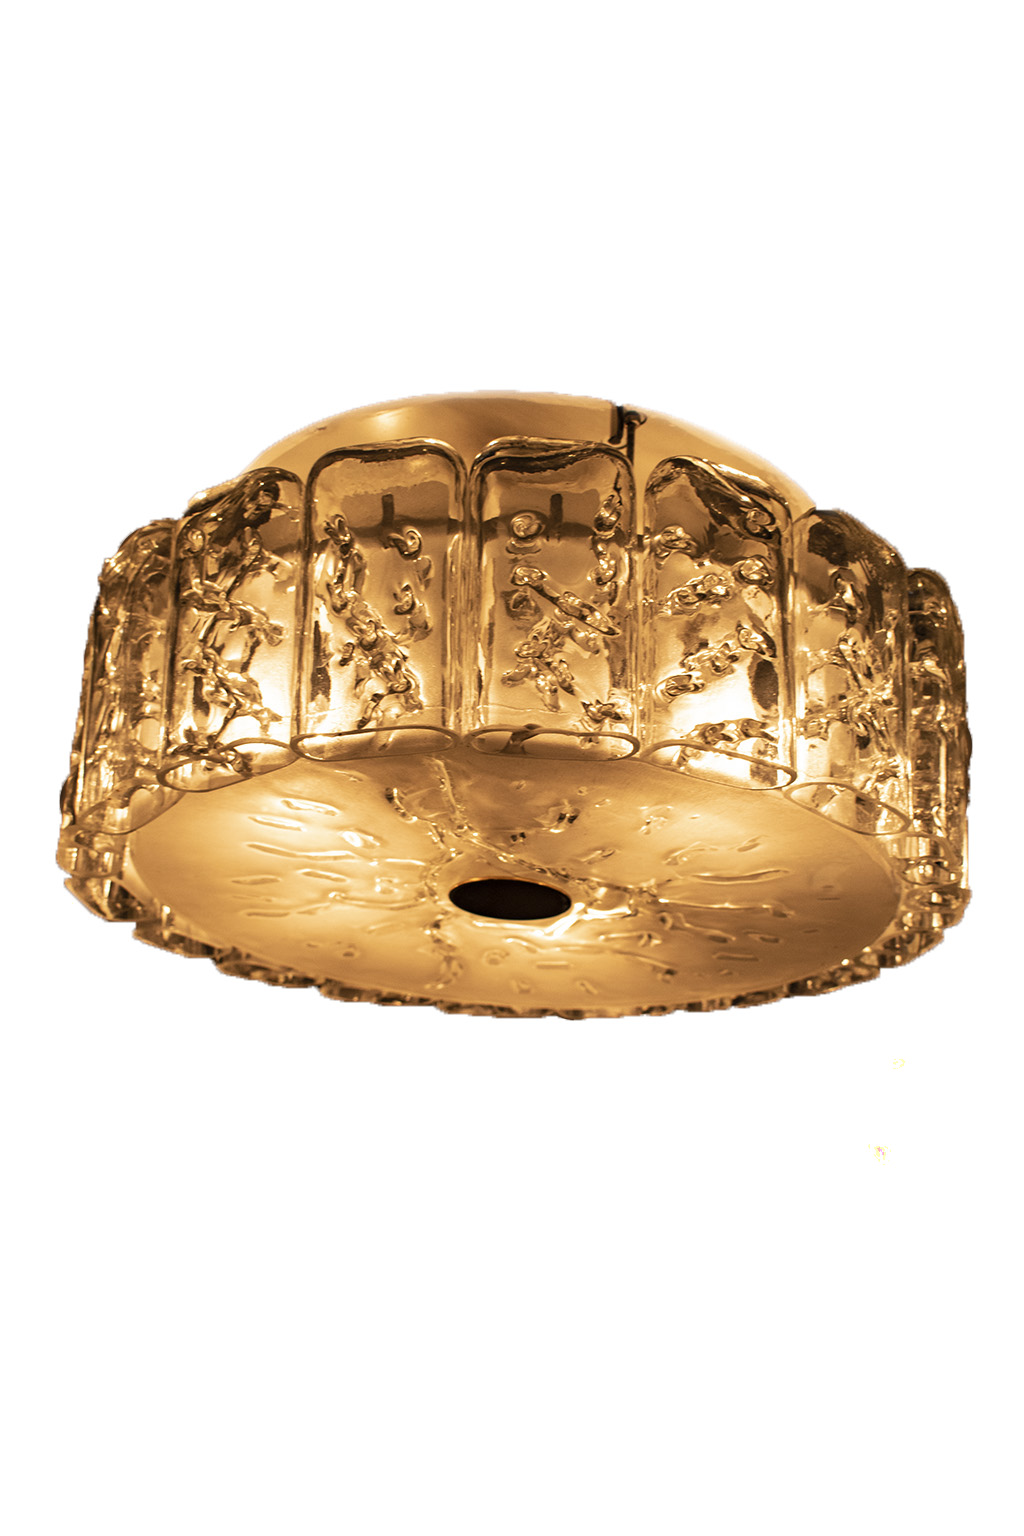 Doria 60s round ceiling lamp